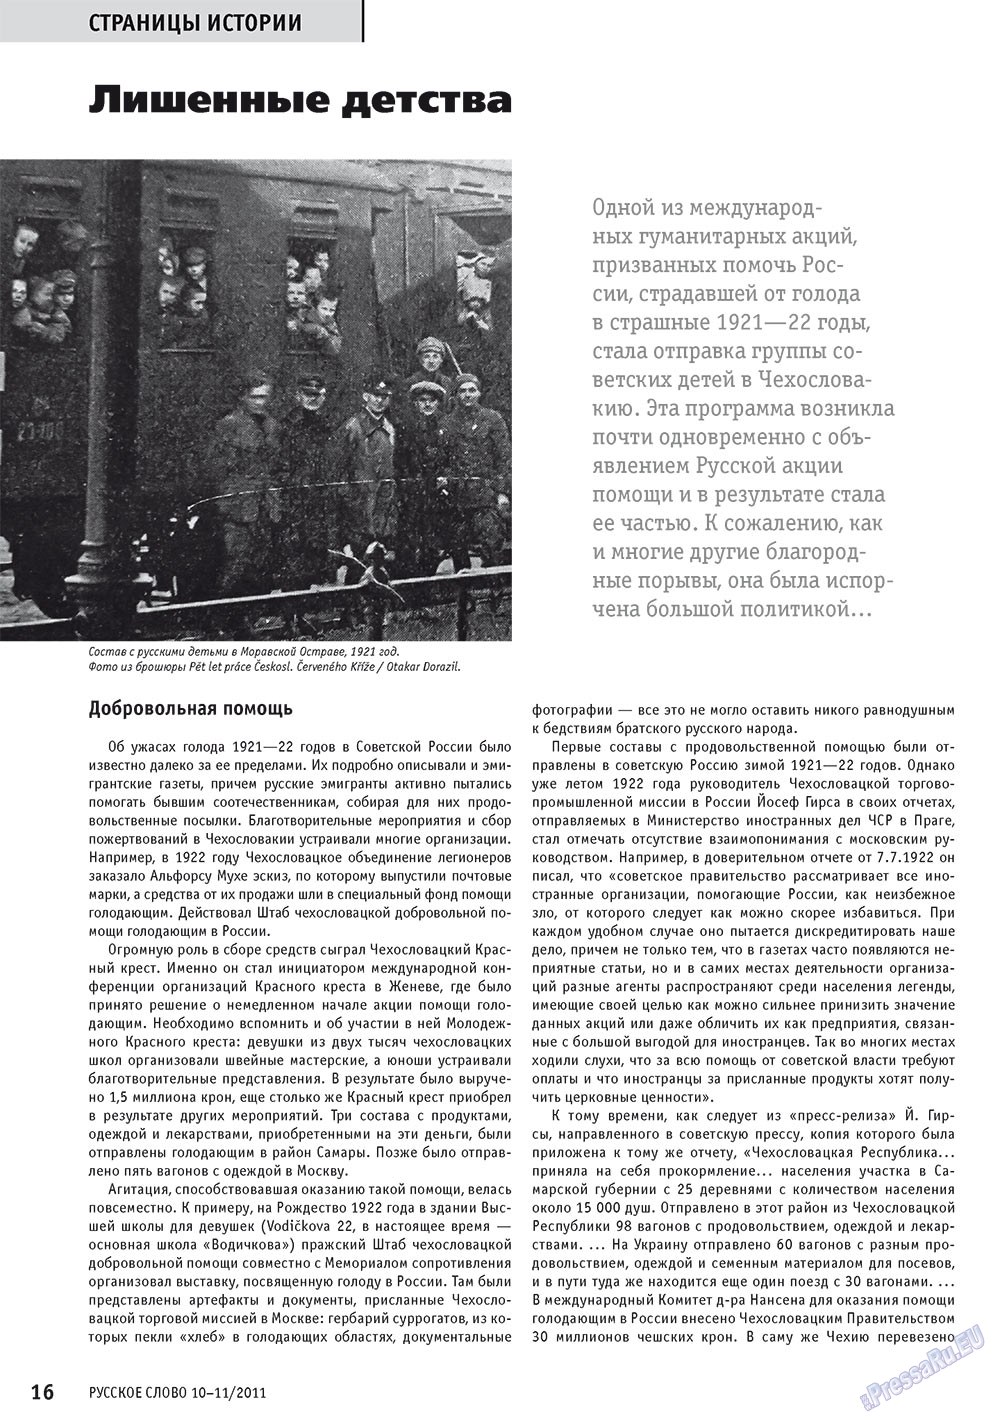 Русское слово, журнал. 2011 №10 стр.18